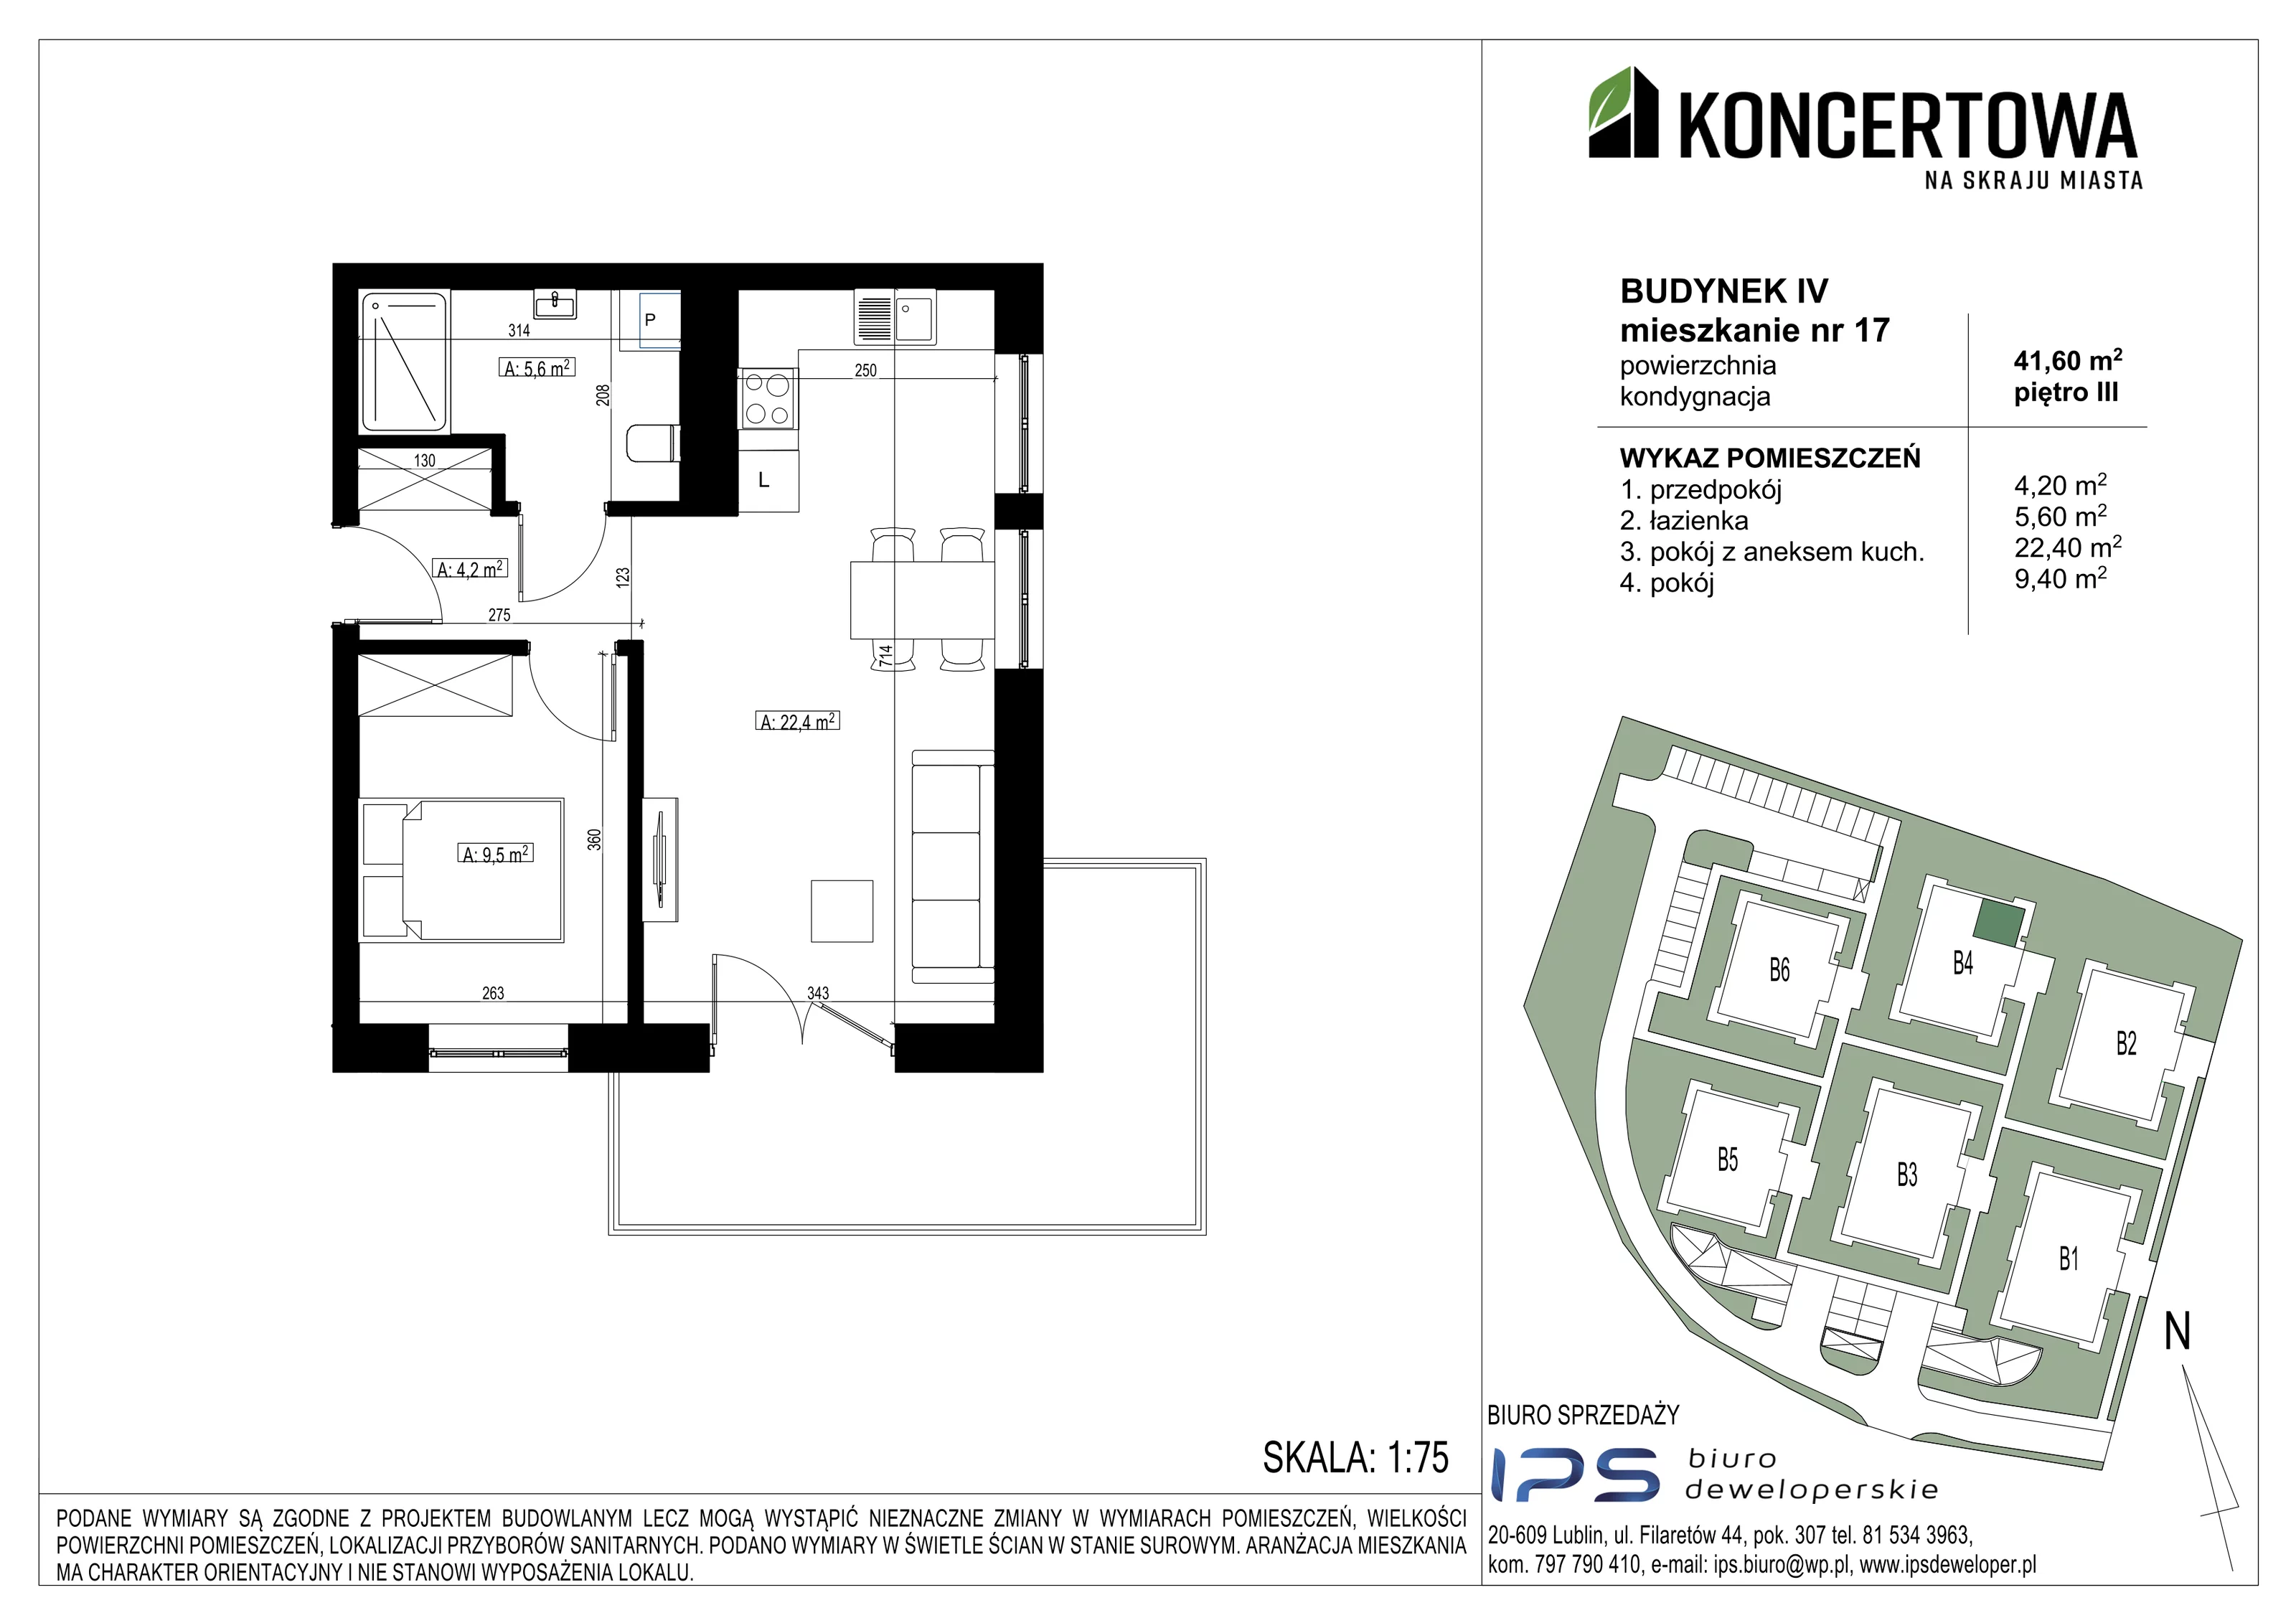 Mieszkanie 41,60 m², piętro 3, oferta nr 2_IV/17, KONCERTOWA - Na skraju miasta, Lublin, Czechów Północny, Czechów Północny,  ul. Koncertowa